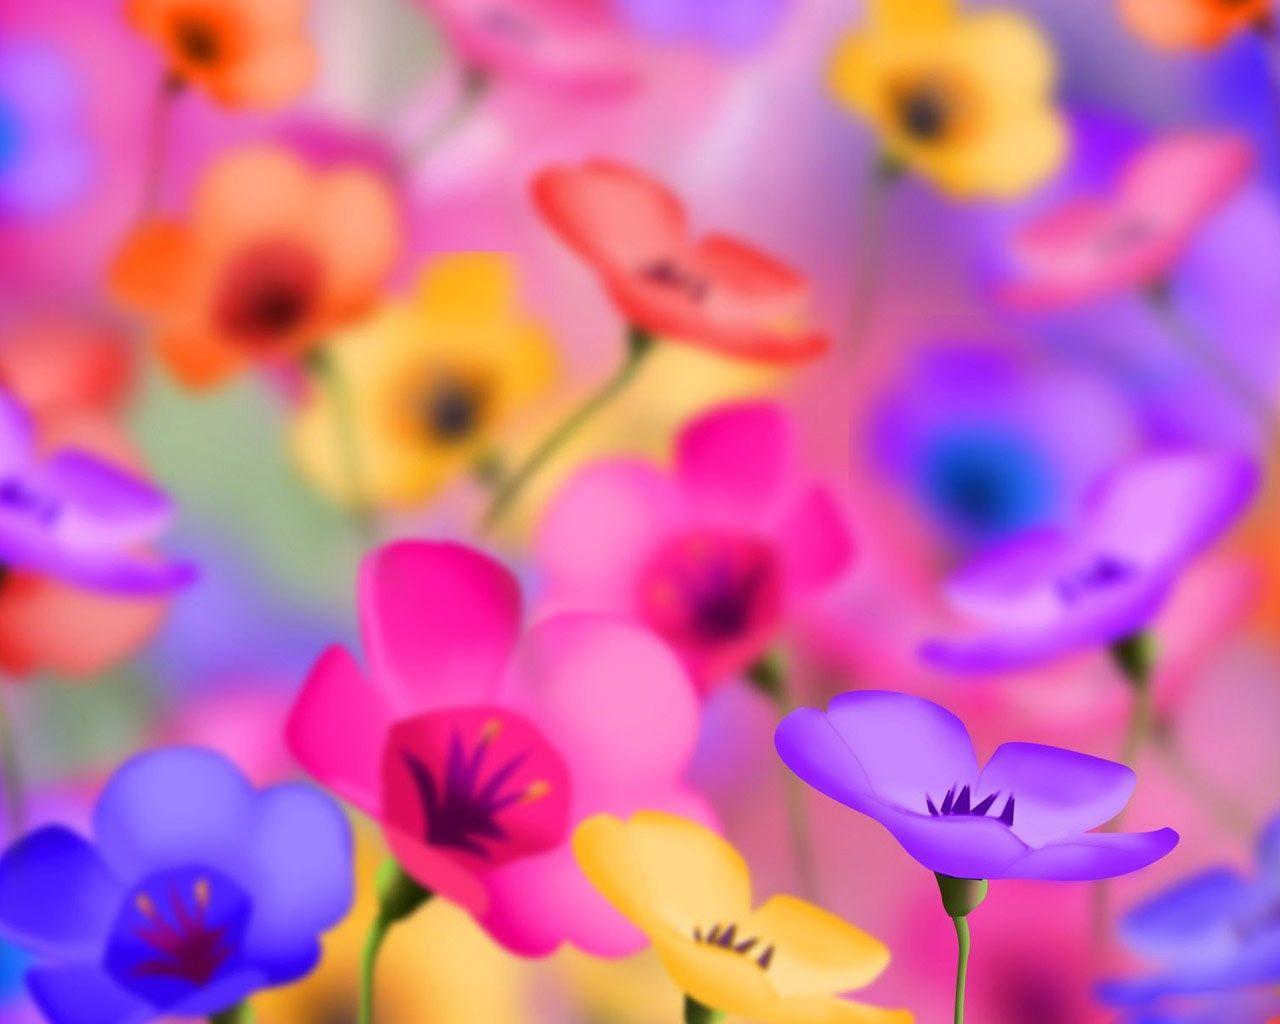 Flower Image For Desktop Background